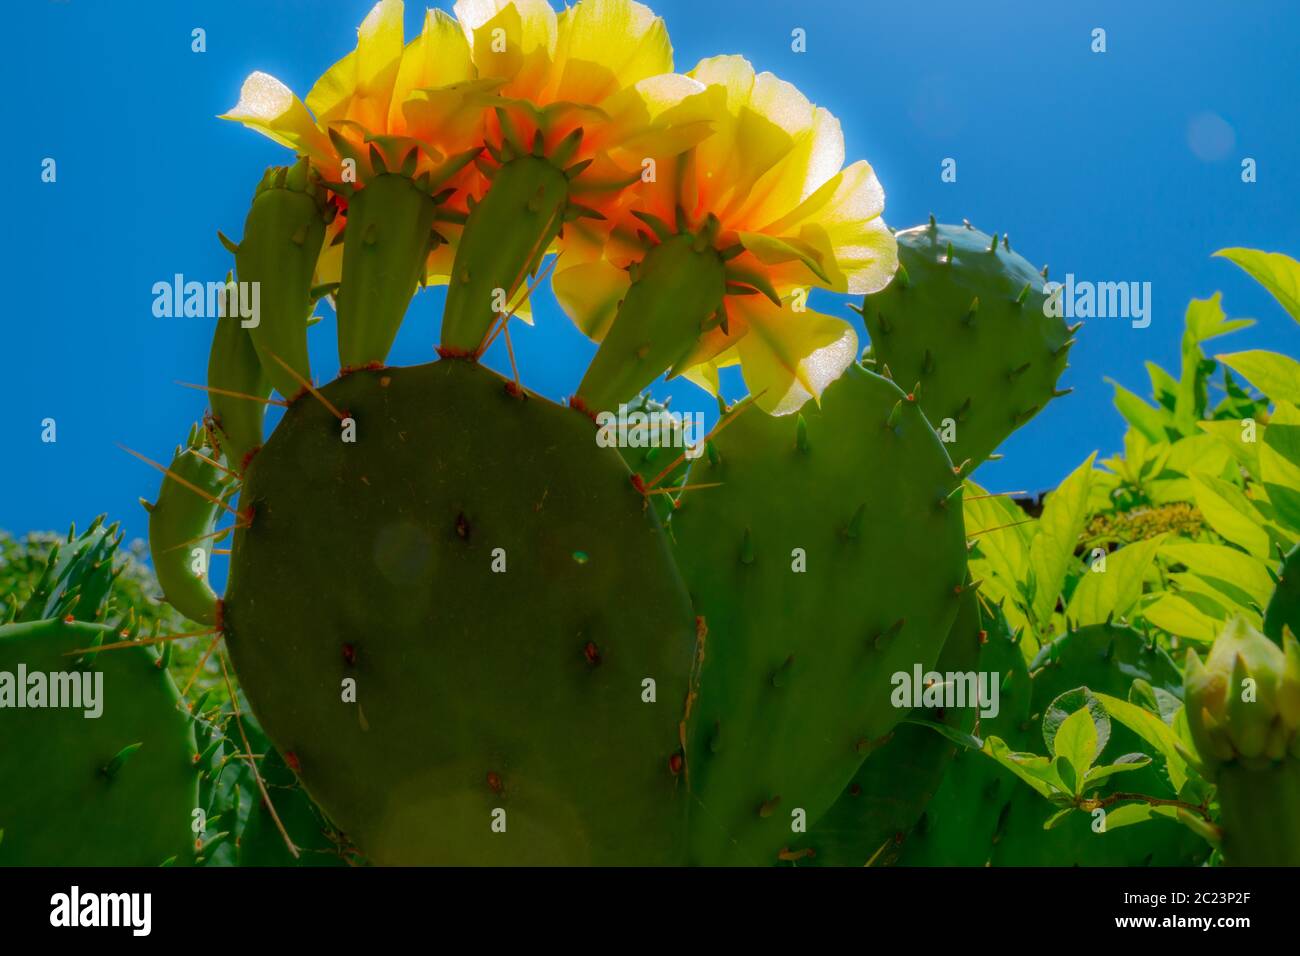 Prickly Pear cactus fiorisce dalla primavera all'estate, in cima alle pale più alte del cactus. Poi ottengono le gemme e si trasformano in frutta. Foto Stock